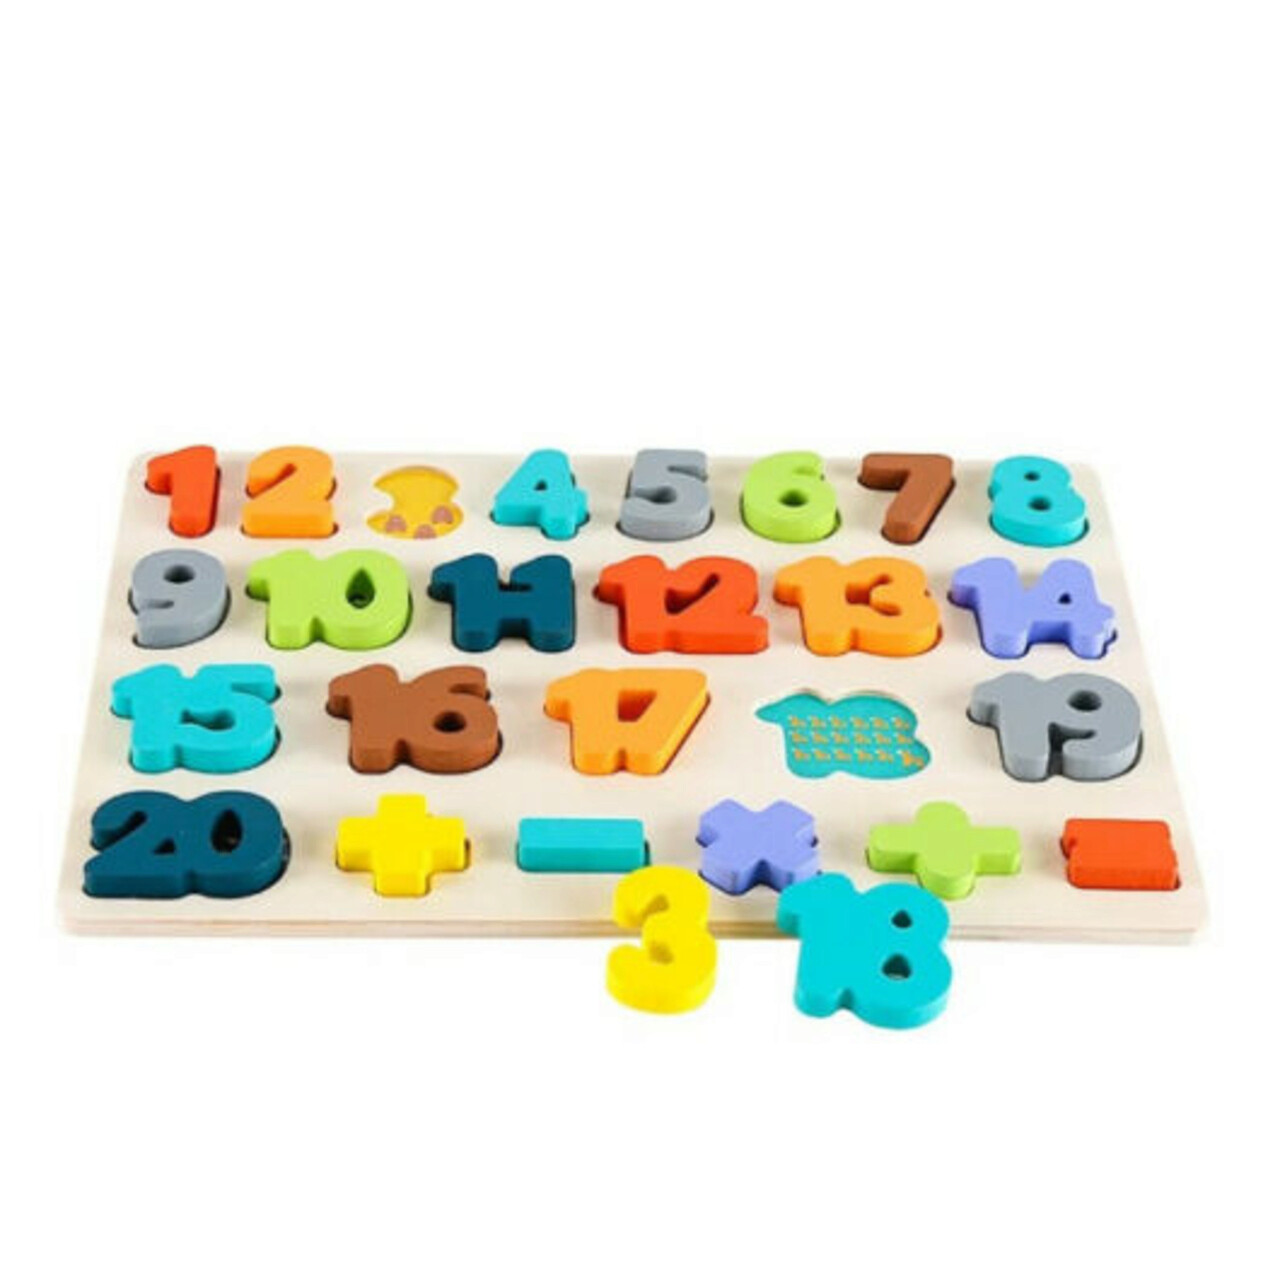 roata cu numere de la 1 la 100 Puzzle incastru din lemn cu numere de la 1 la 20, 26 bucati, Phoohi, PH07J012, multicolor